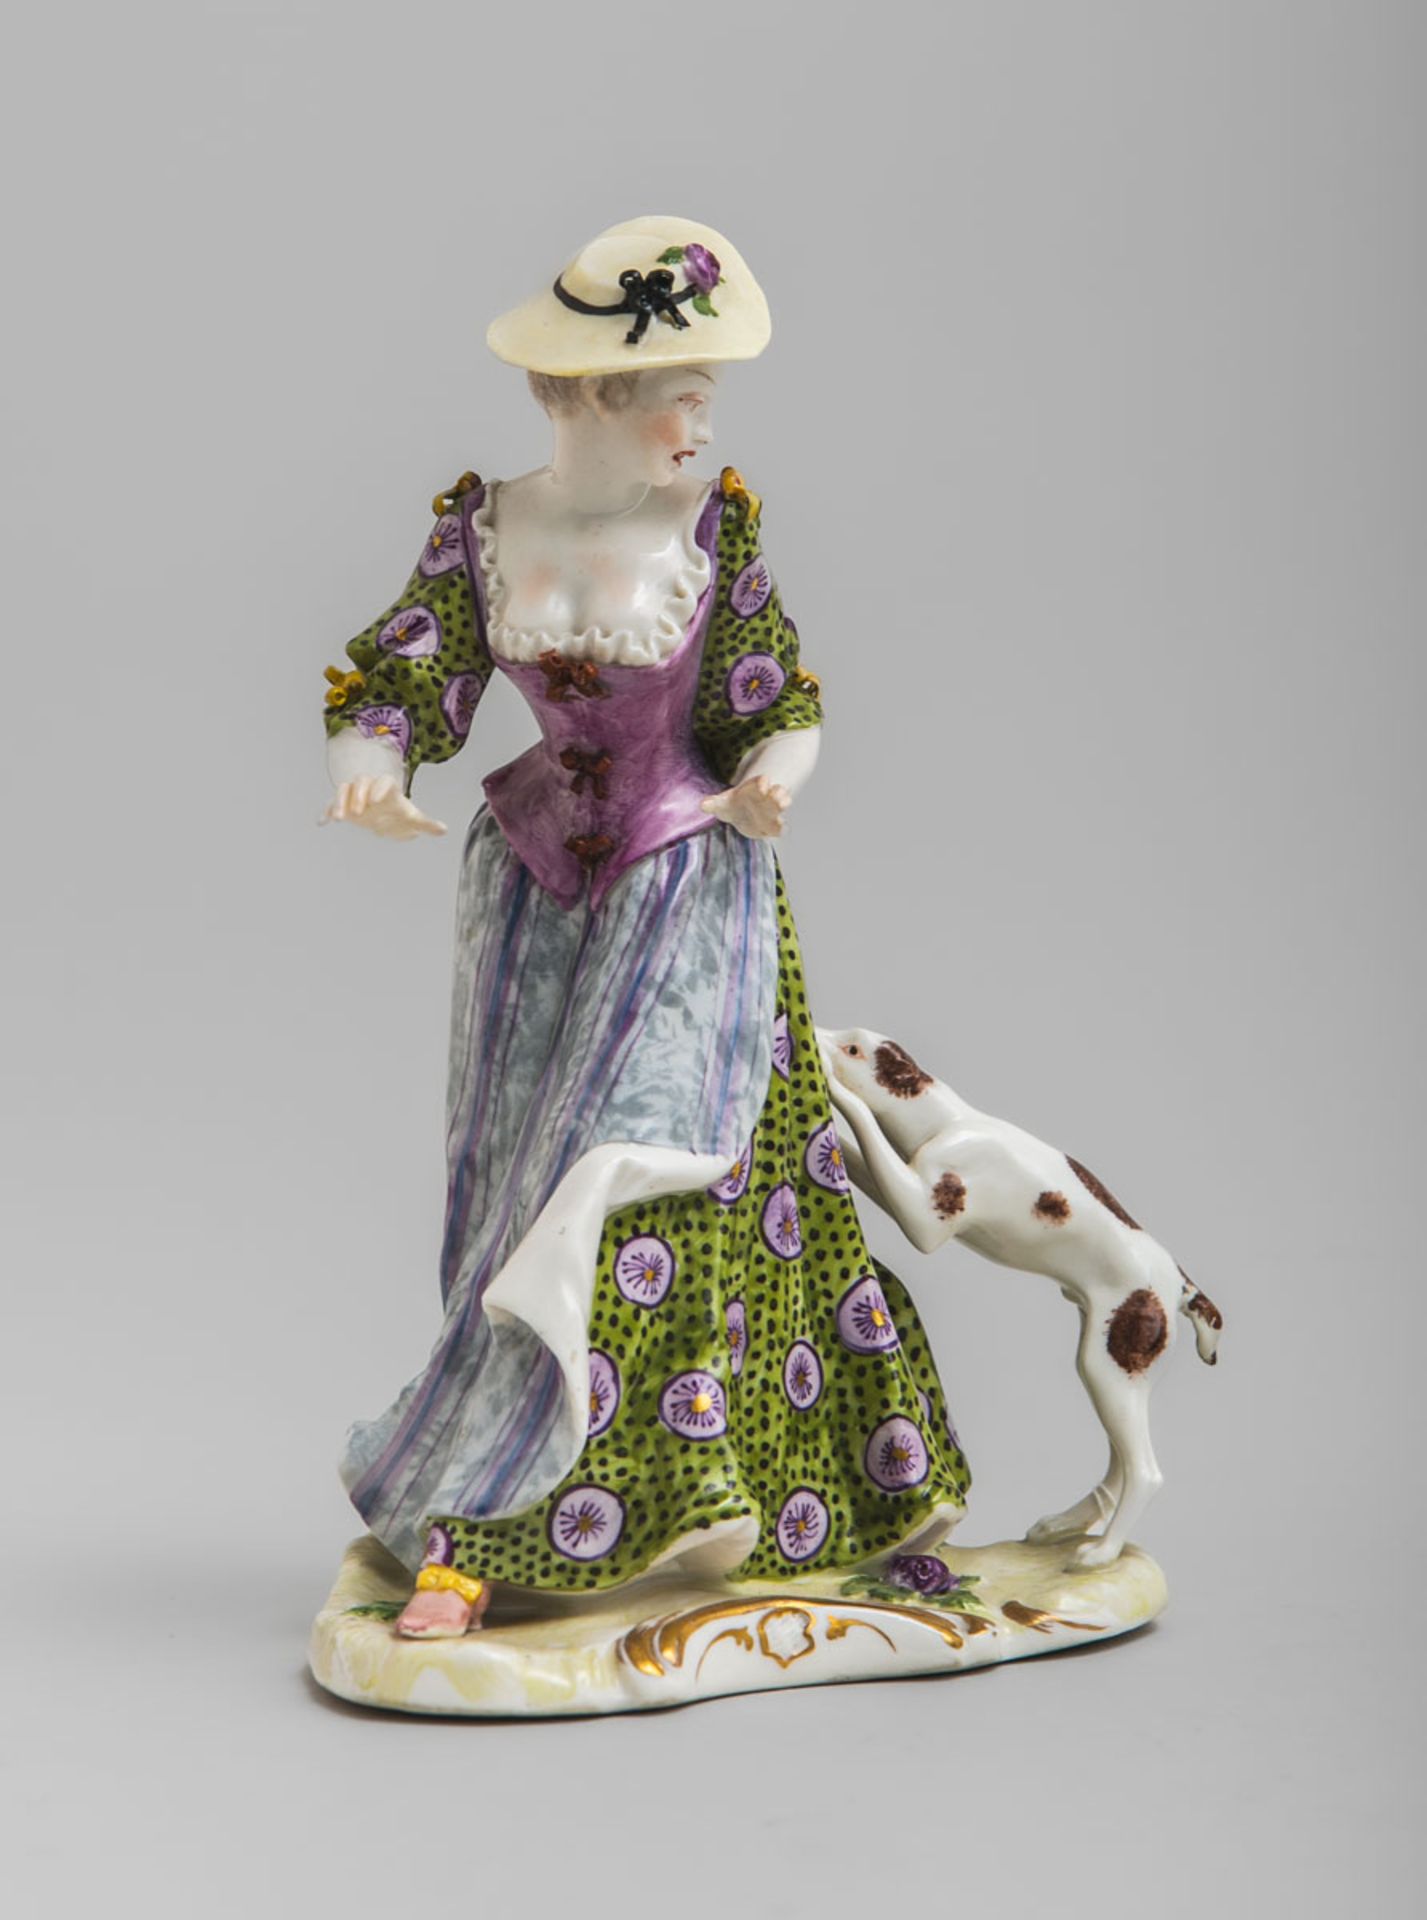 Figurine "Dame von Hund angefallen" (Nymphenburg)